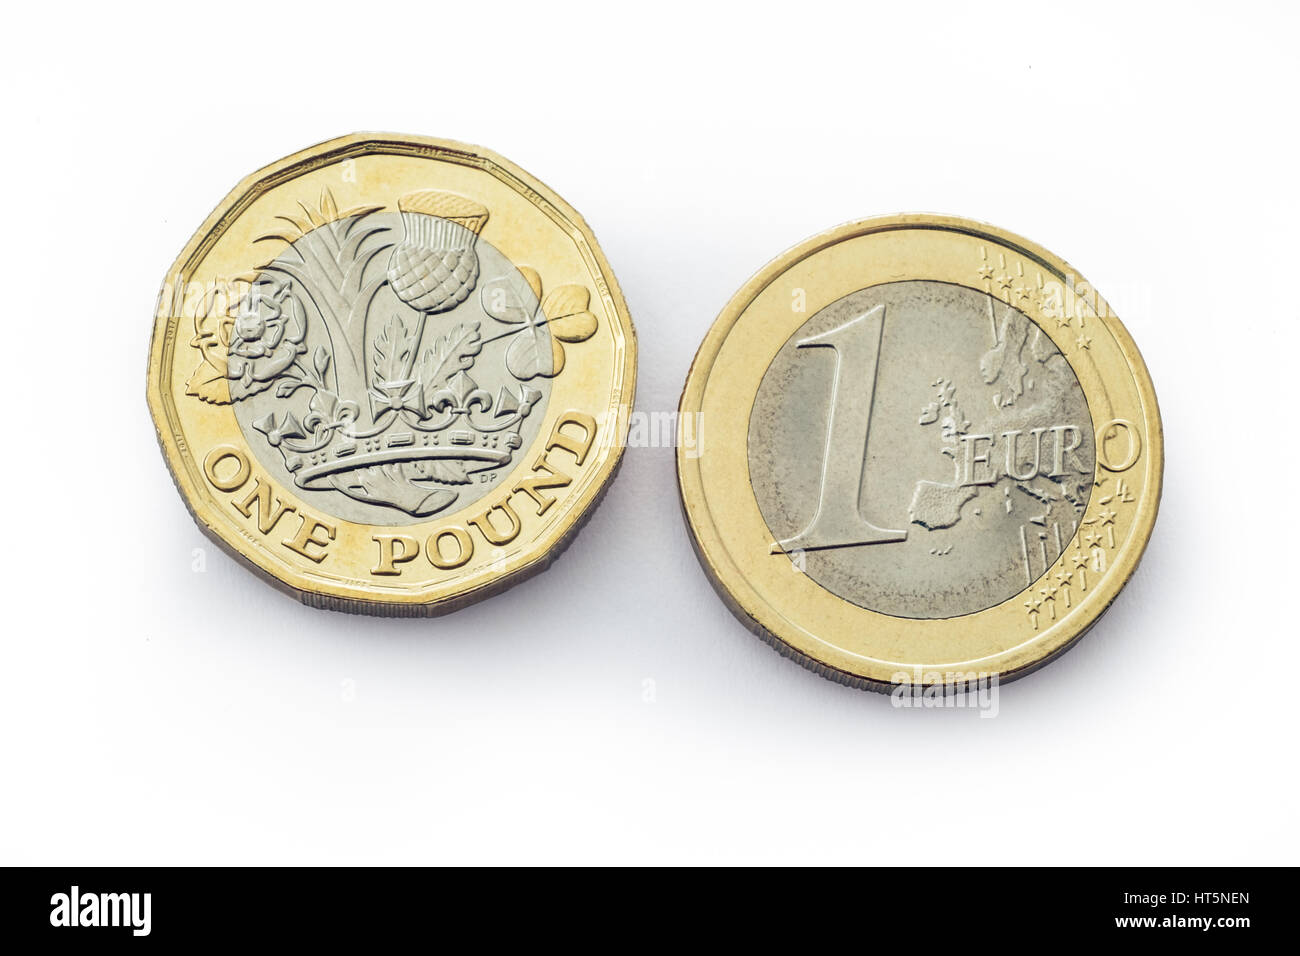 Ähnliche Münzen für die monetären Einheiten von Großbritannien und Europa Stockfoto